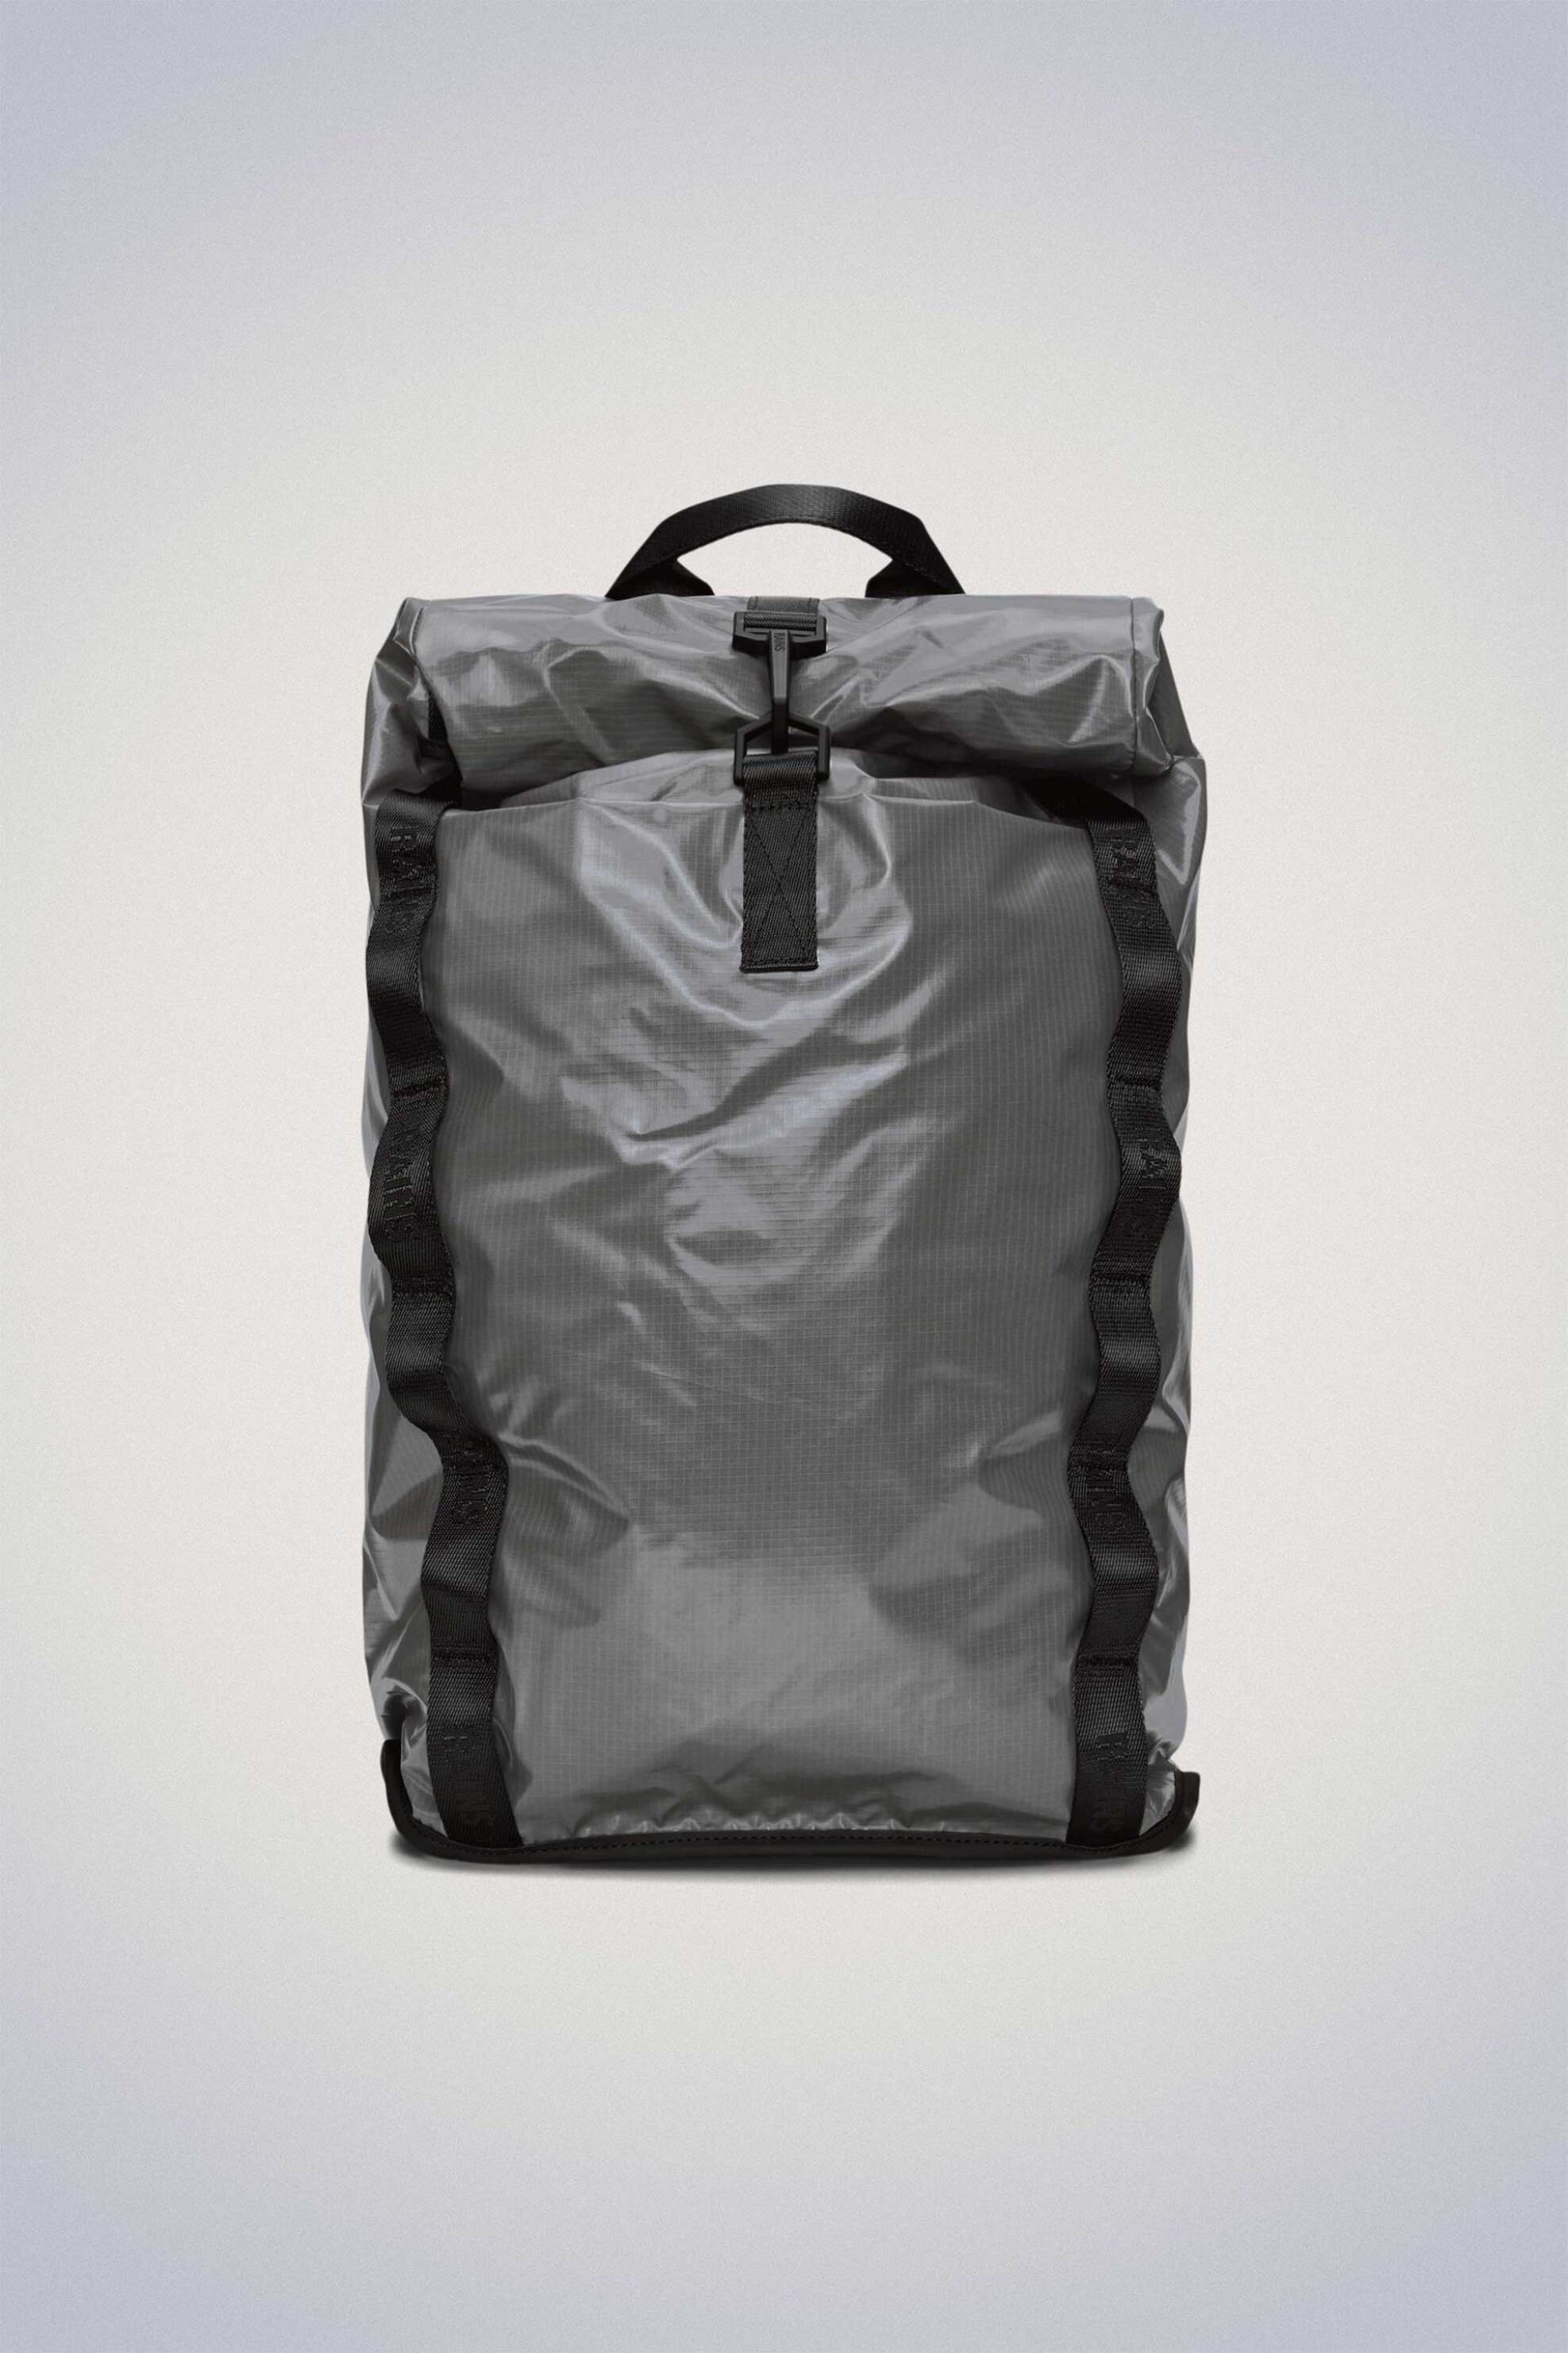 Ανδρική Μόδα > Ανδρικές Τσάντες > Ανδρικά Σακίδια & Backpacks Rains unisex αδιάβροχο backpack "Sibu Rolltop Rucksack" - RNSSS2414770 Γκρι